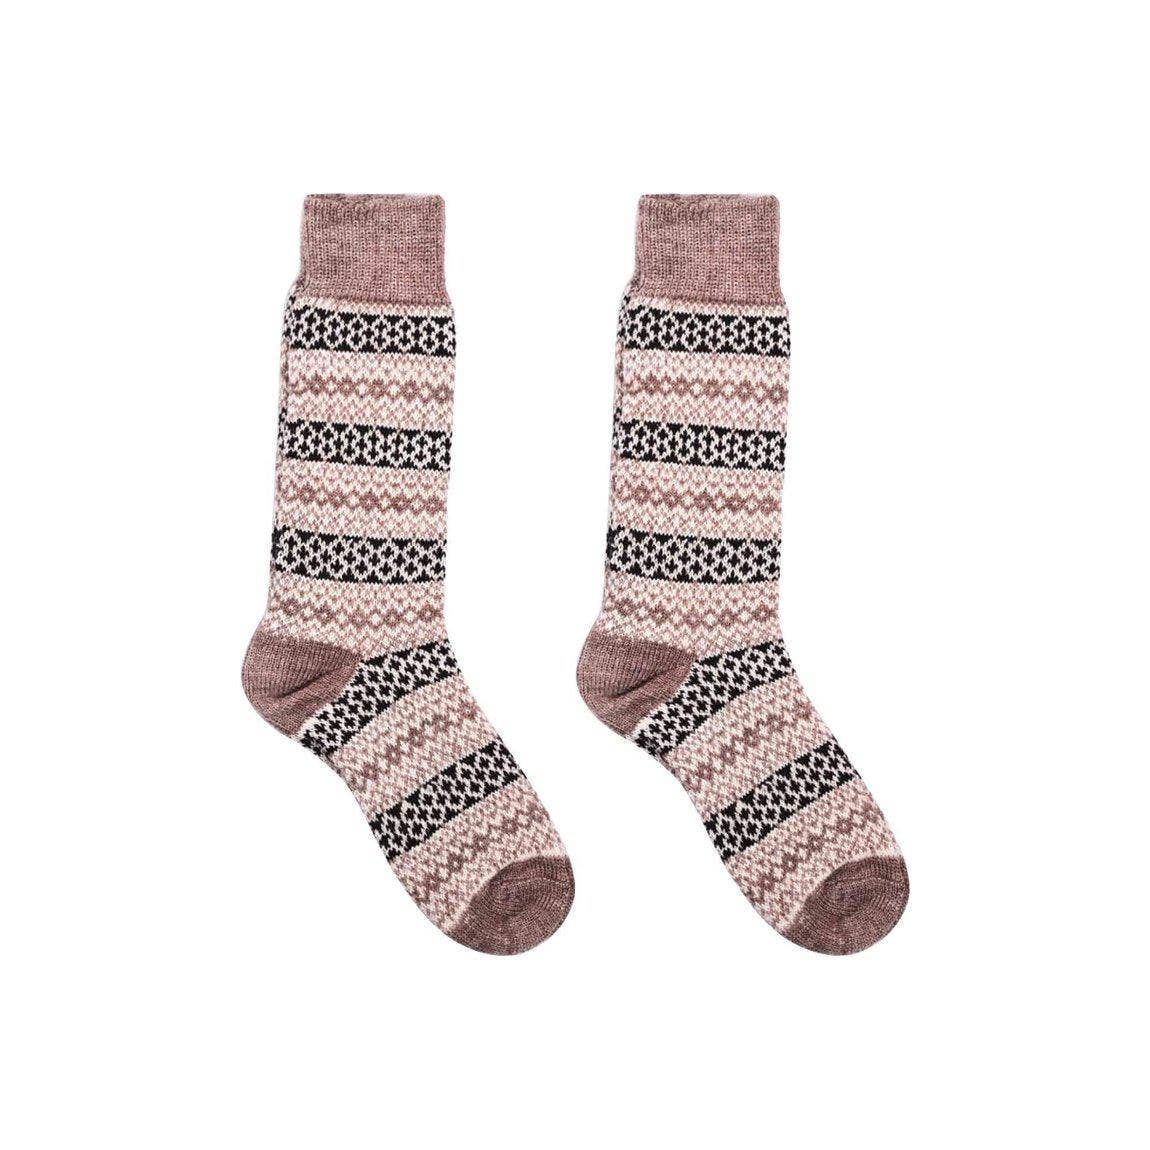 Nordic Socks Merino Wool in PERFORM™ – Cinnamon